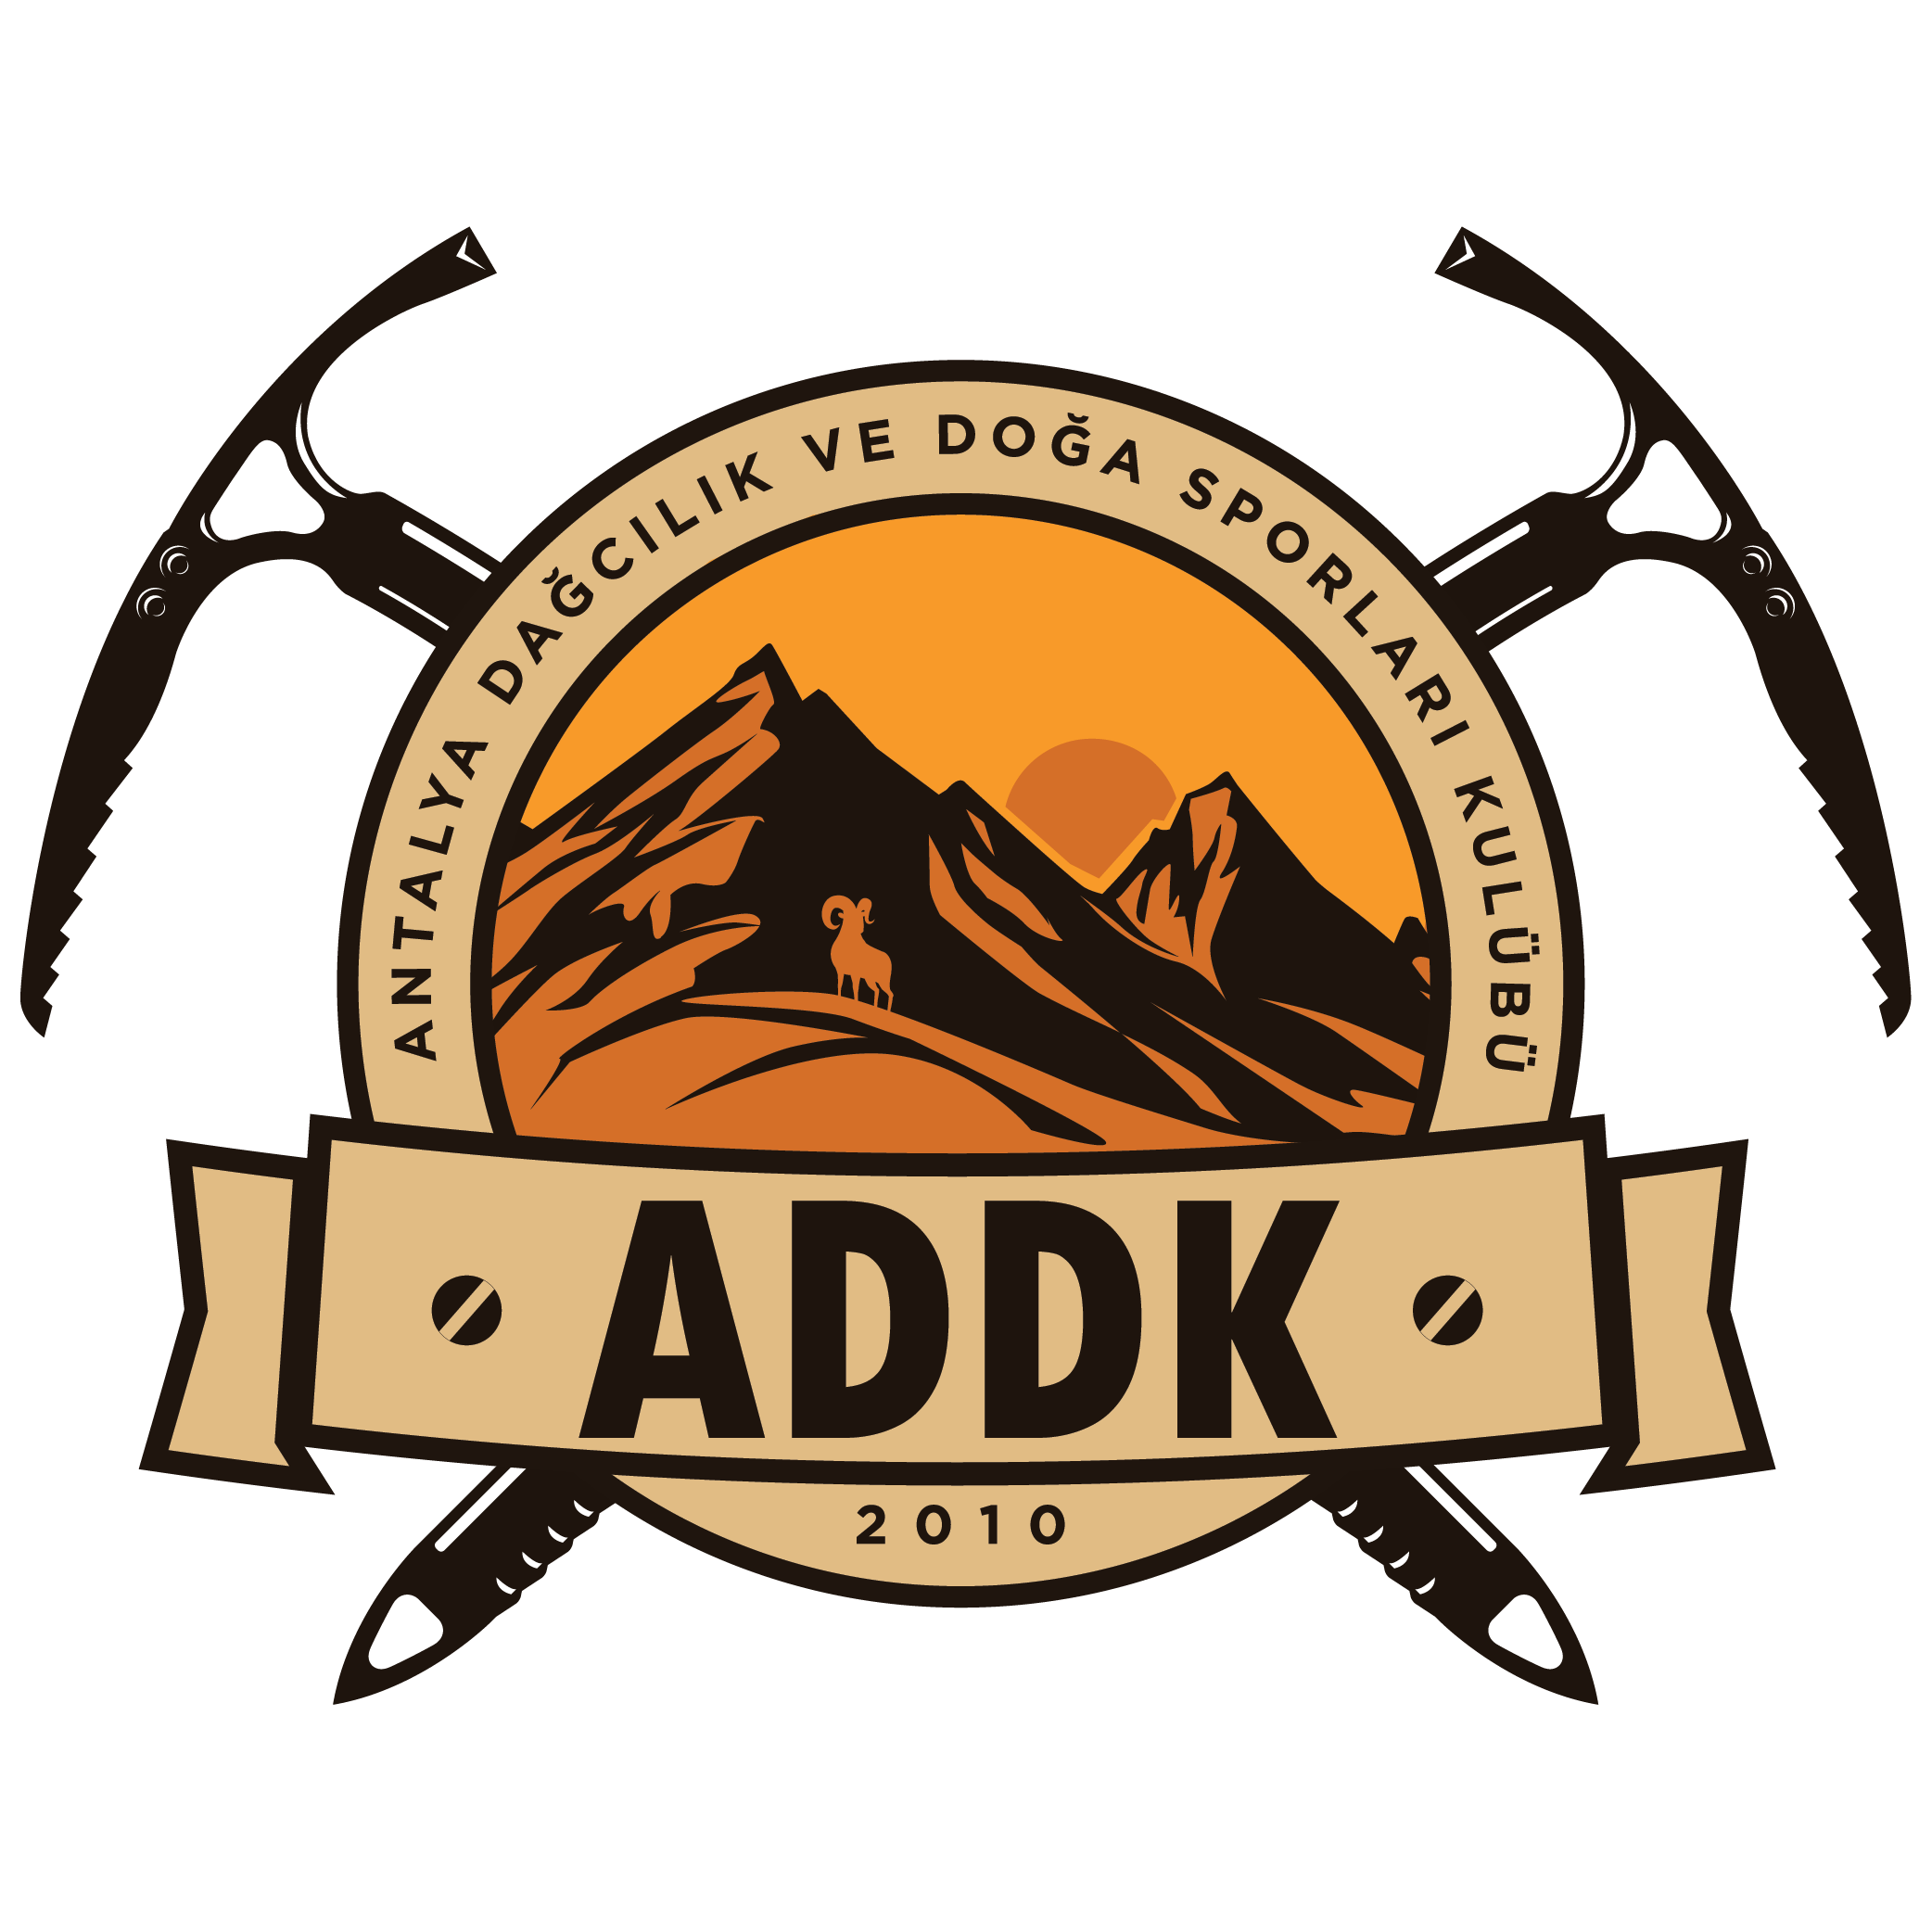 ADDK - Antalya Dağcılık ve Doğa Sporları Kulübü